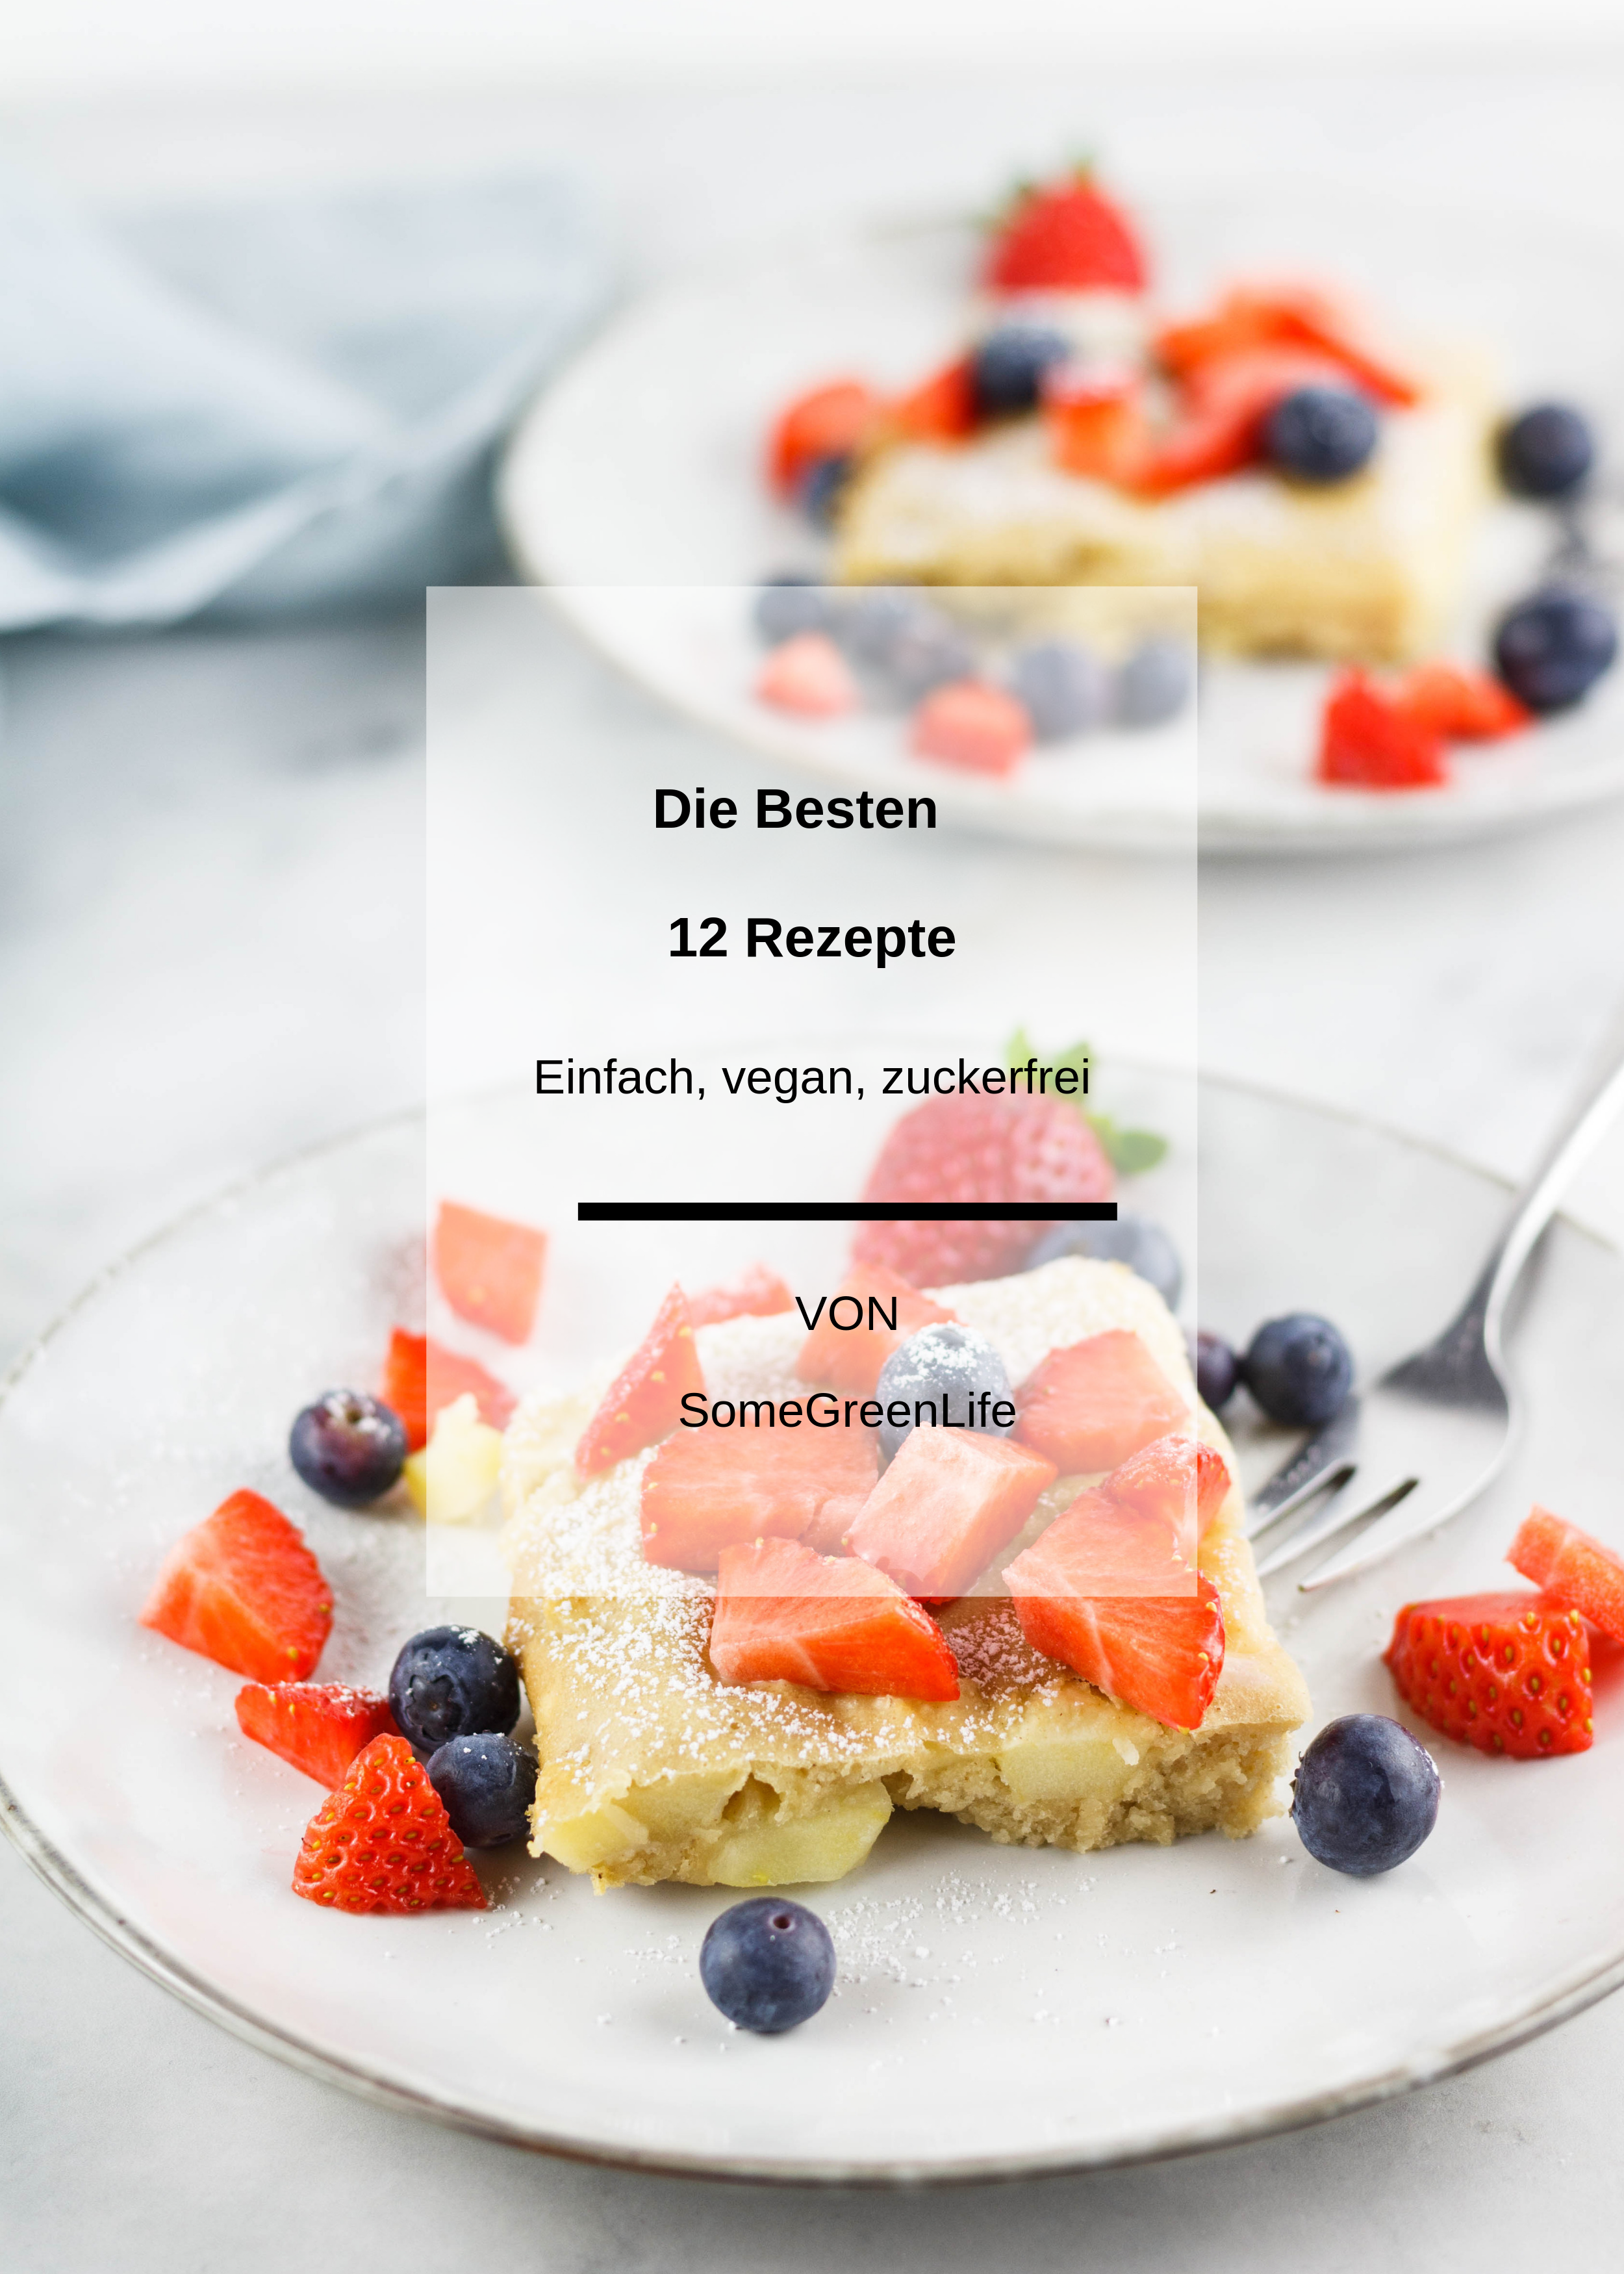 Free E-Book: Die Besten 12 Rezepte – einfach, vegan, zuckerfrei